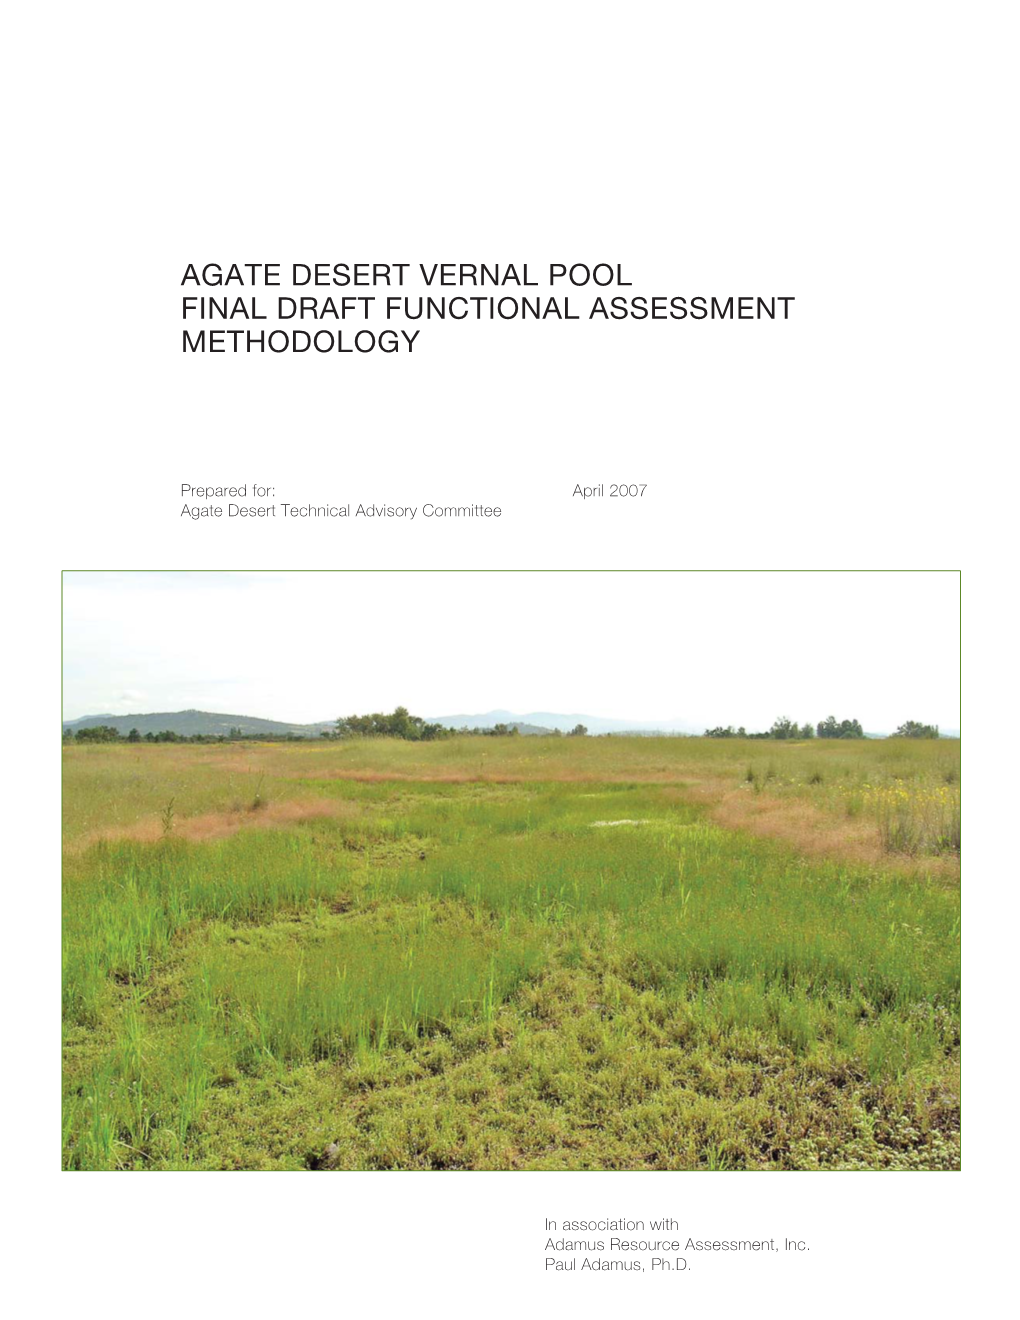 Agate Desert Vernal Pool Final Draft Functional Assessment Methodology